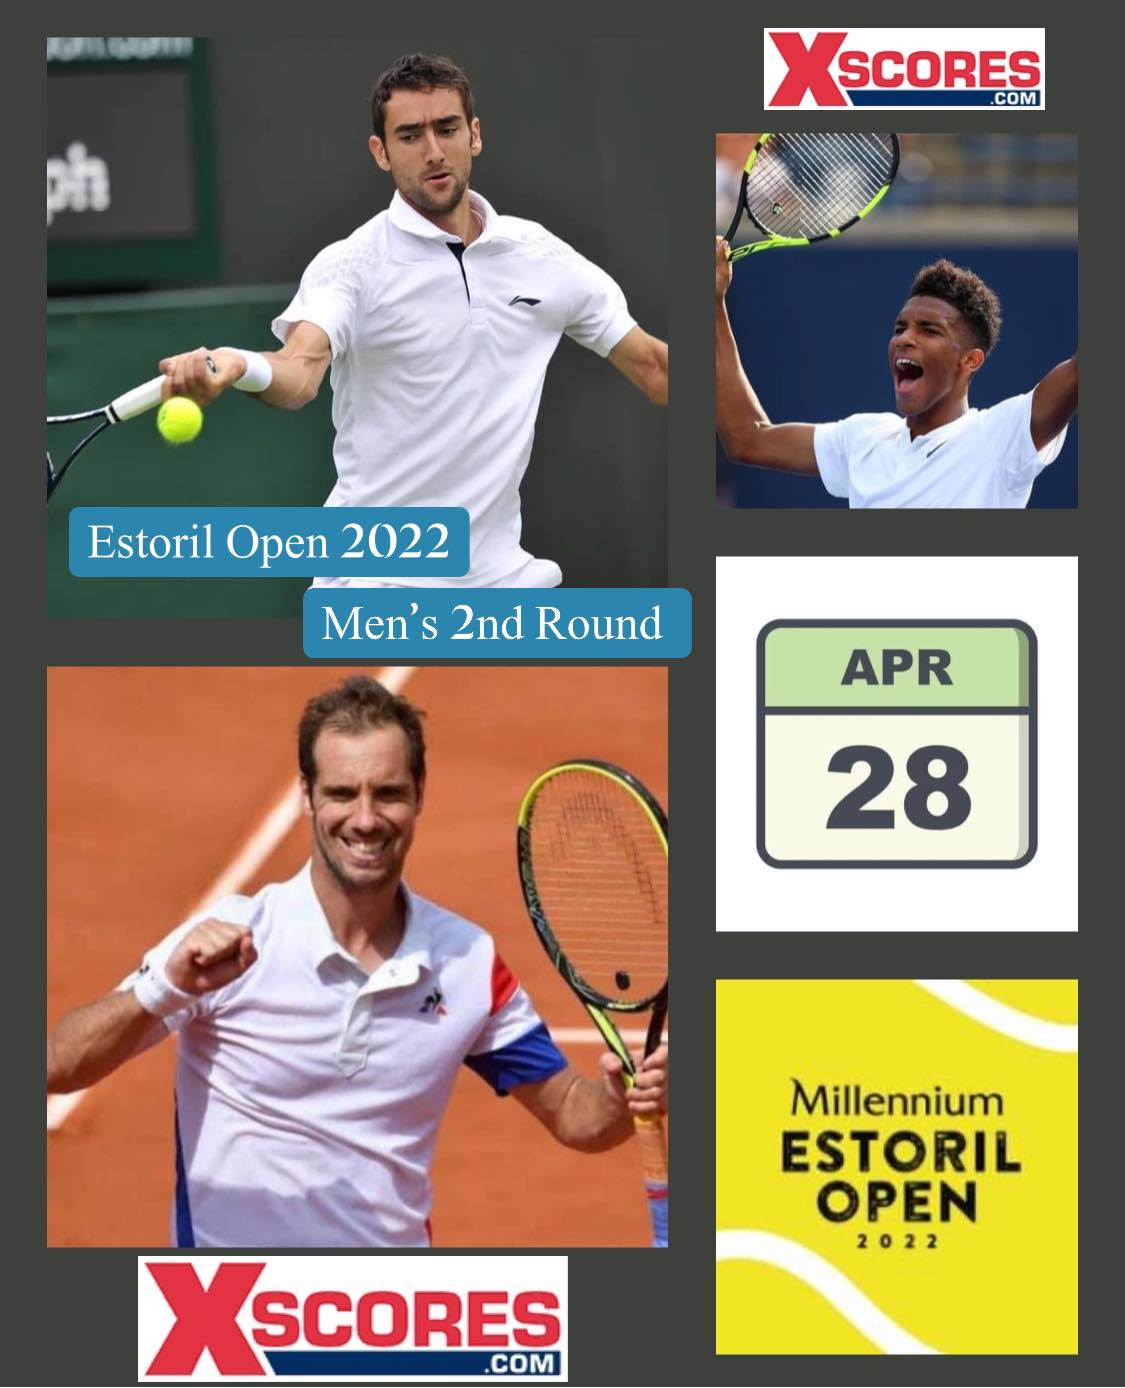 🎾🎾Tennis- ATP Tour 250 – Surface Outdoor Clay – Millennium Estoril Open, Estoril, Portugal.🎾🎾